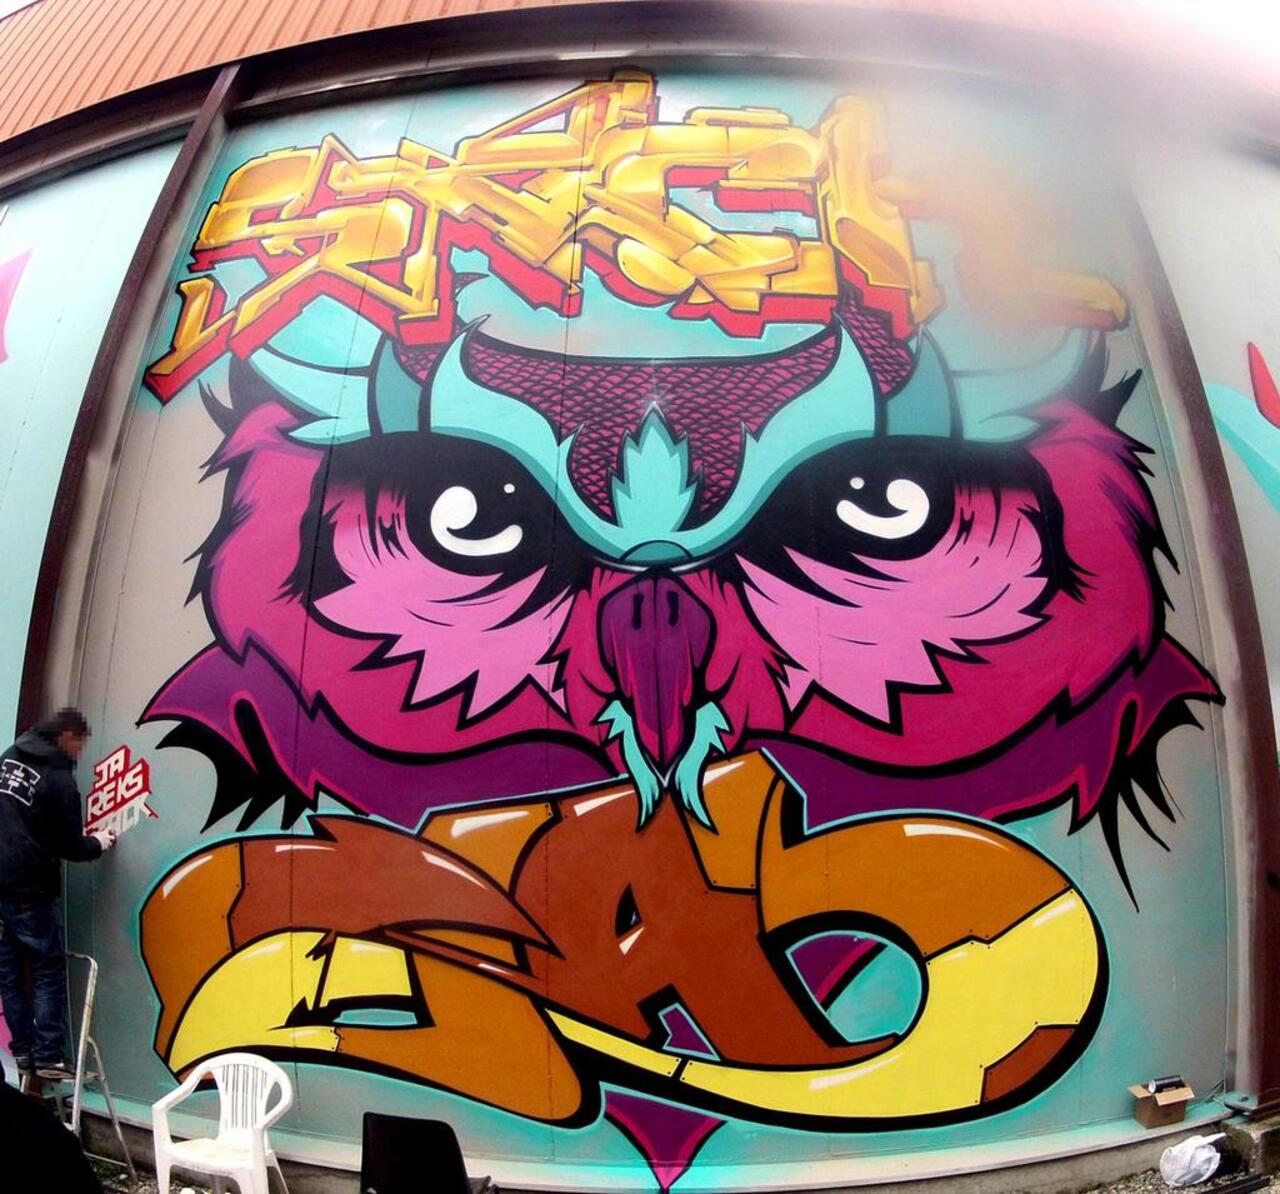 Reks & Ack

South of France
#Graffiti #StreetArt #Mural #painting #Urban #Art http://t.co/rRoEh9K90g